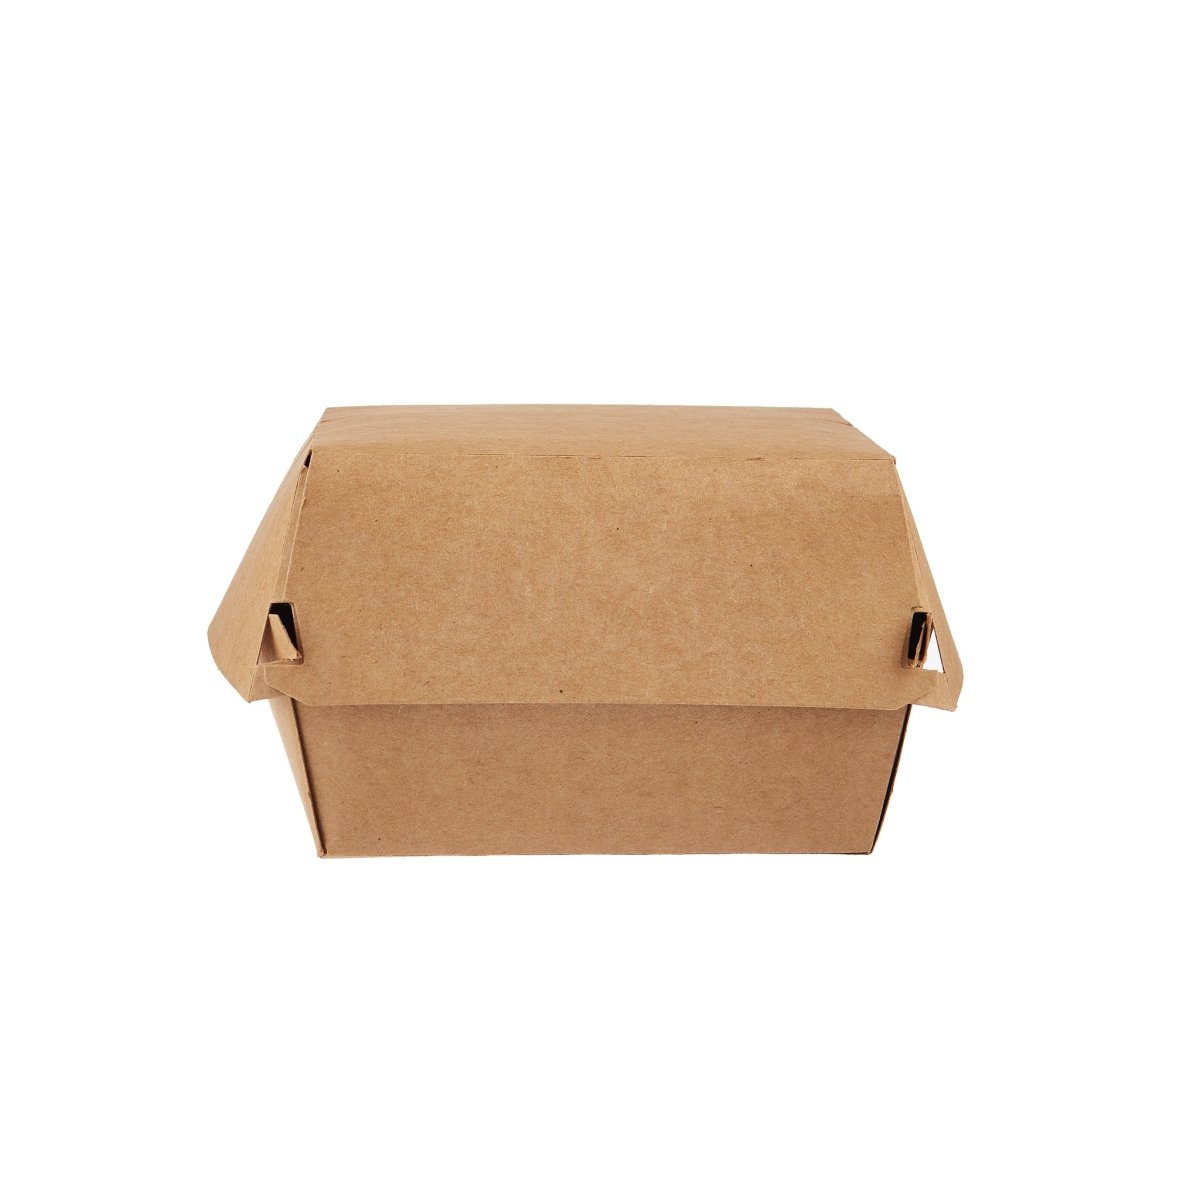 Paper Burger Box - hotpackwebstore.com - Burger Boxes